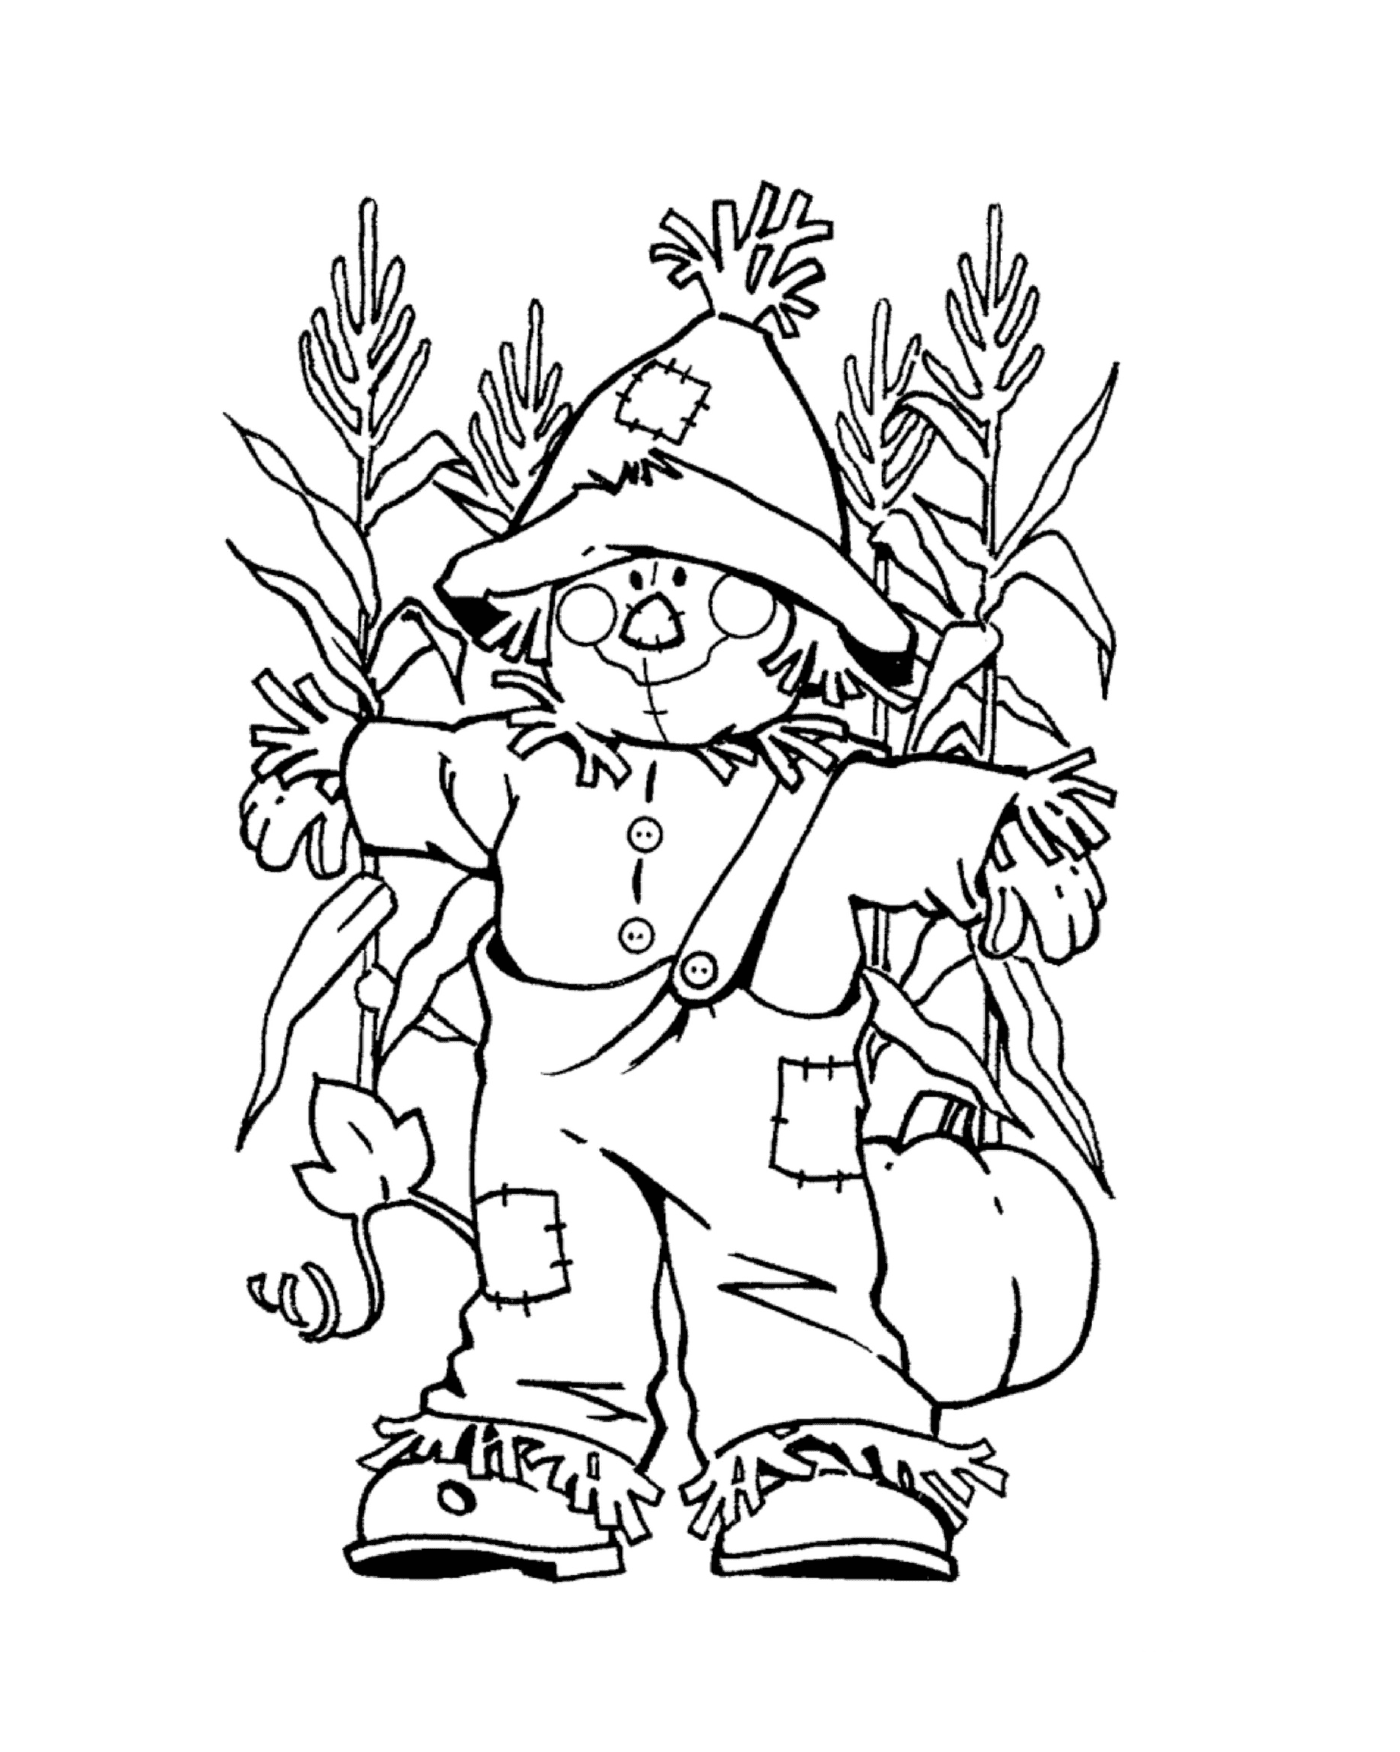  A scarecrow 